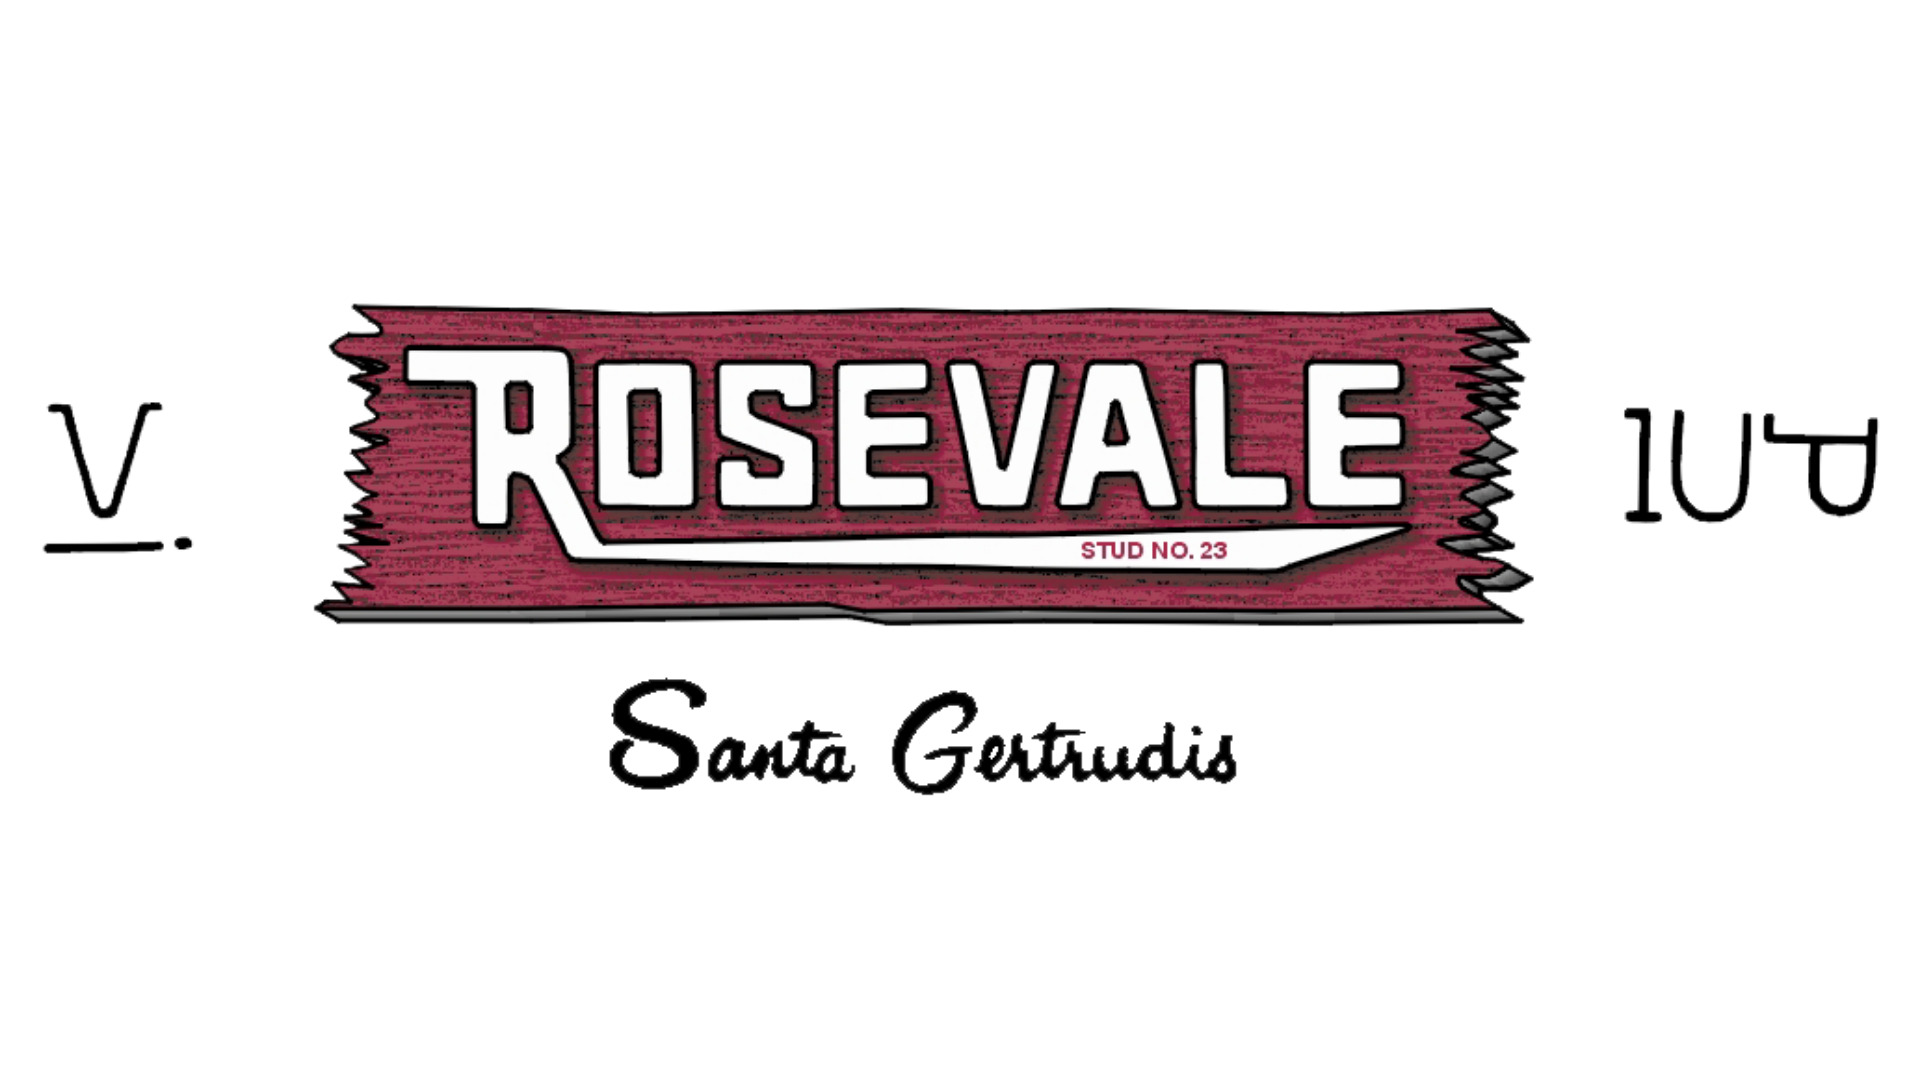 Rosevale Santa Gertrudis